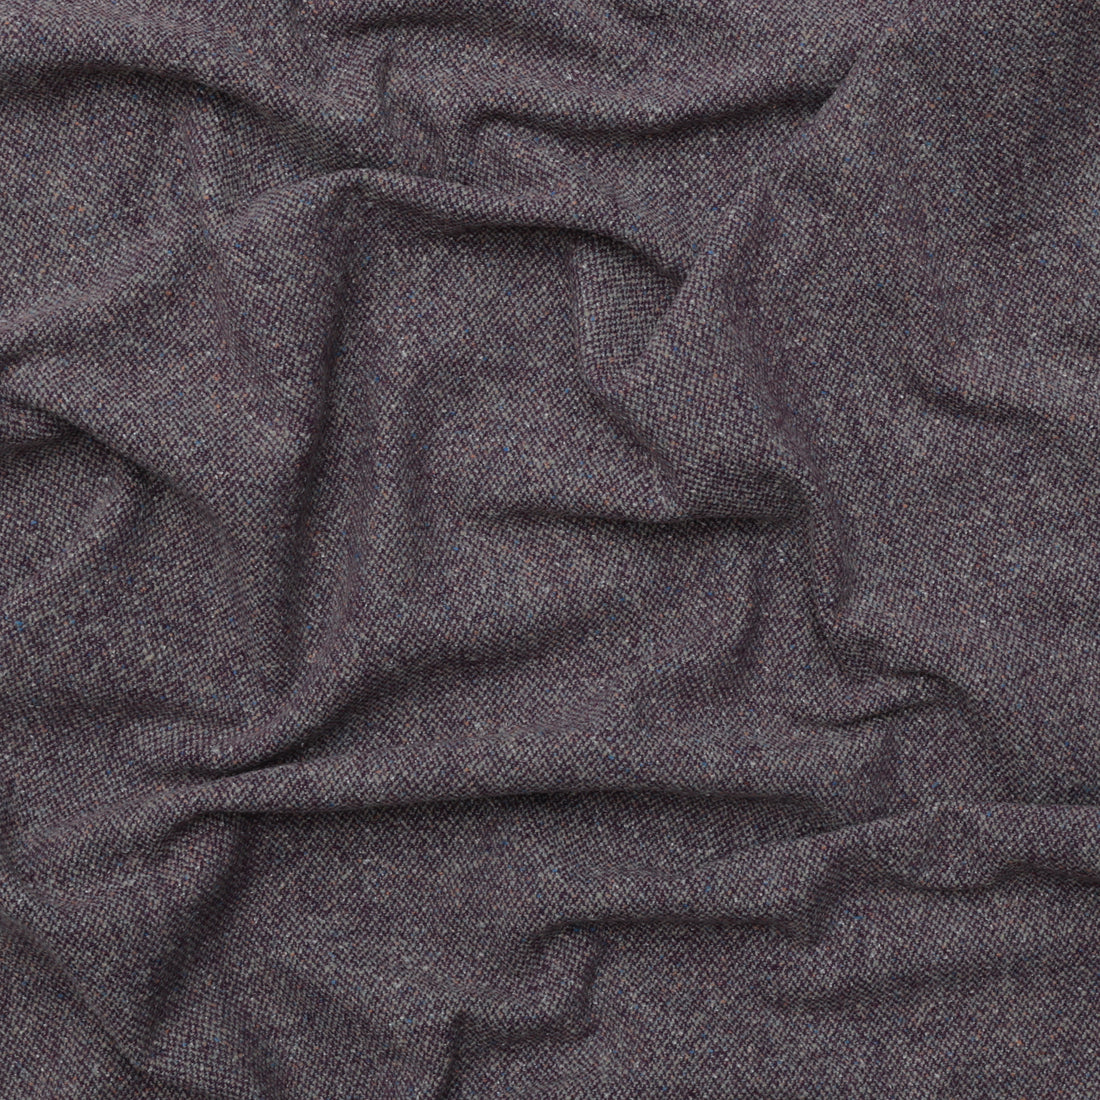 Wool Silk - Speckle Flannel Coating - Purple Green